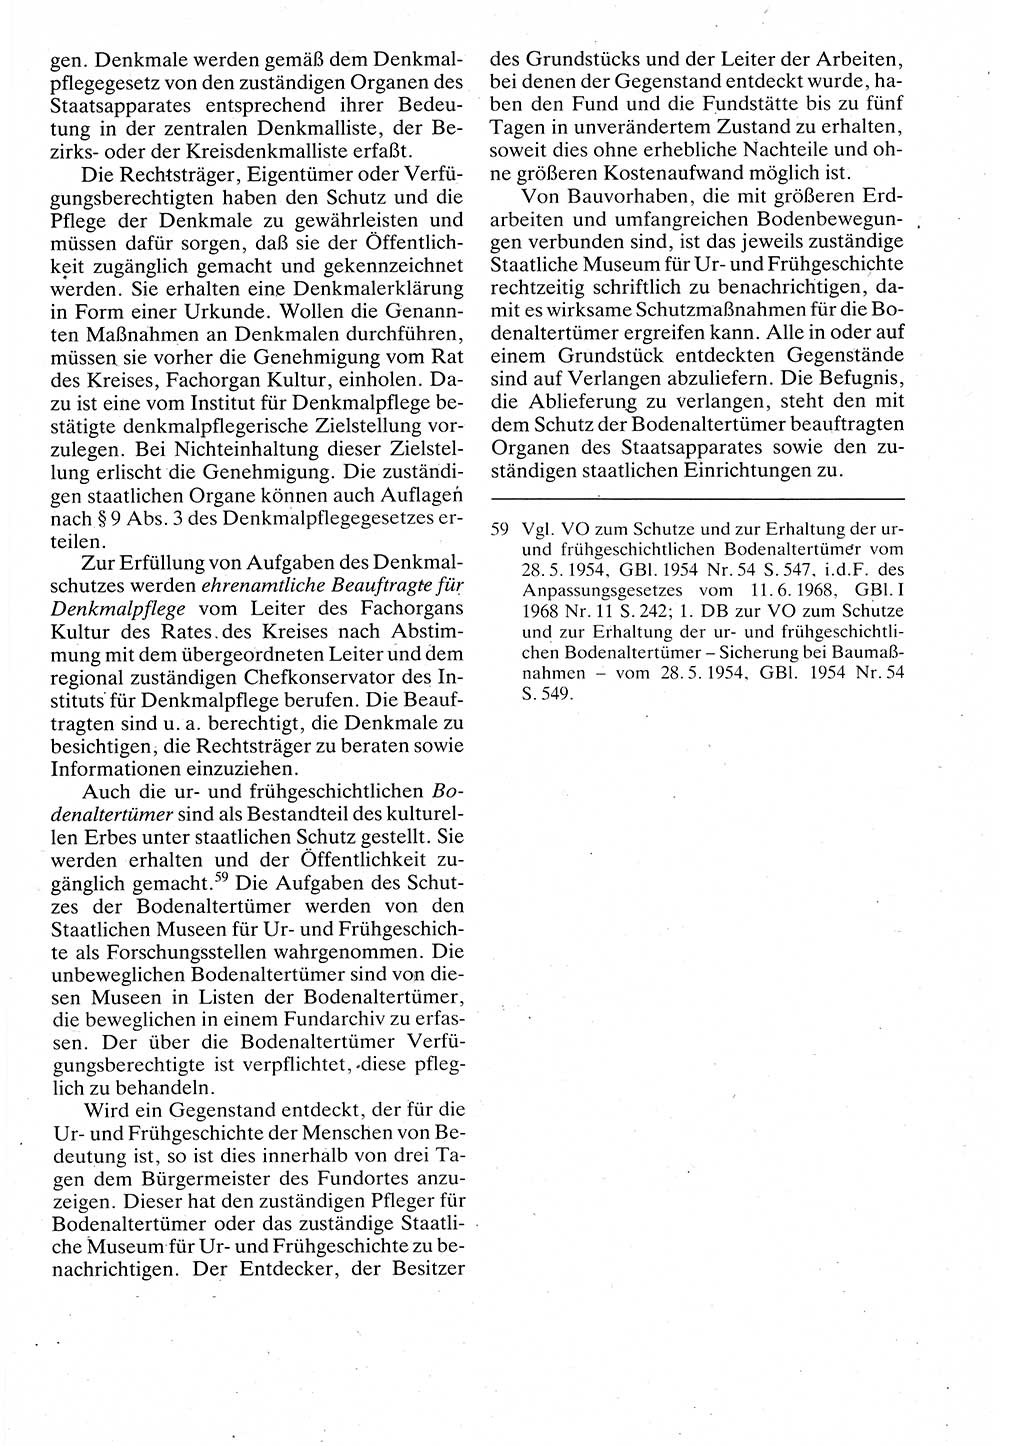 Verwaltungsrecht [Deutsche Demokratische Republik (DDR)], Lehrbuch 1988, Seite 341 (Verw.-R. DDR Lb. 1988, S. 341)